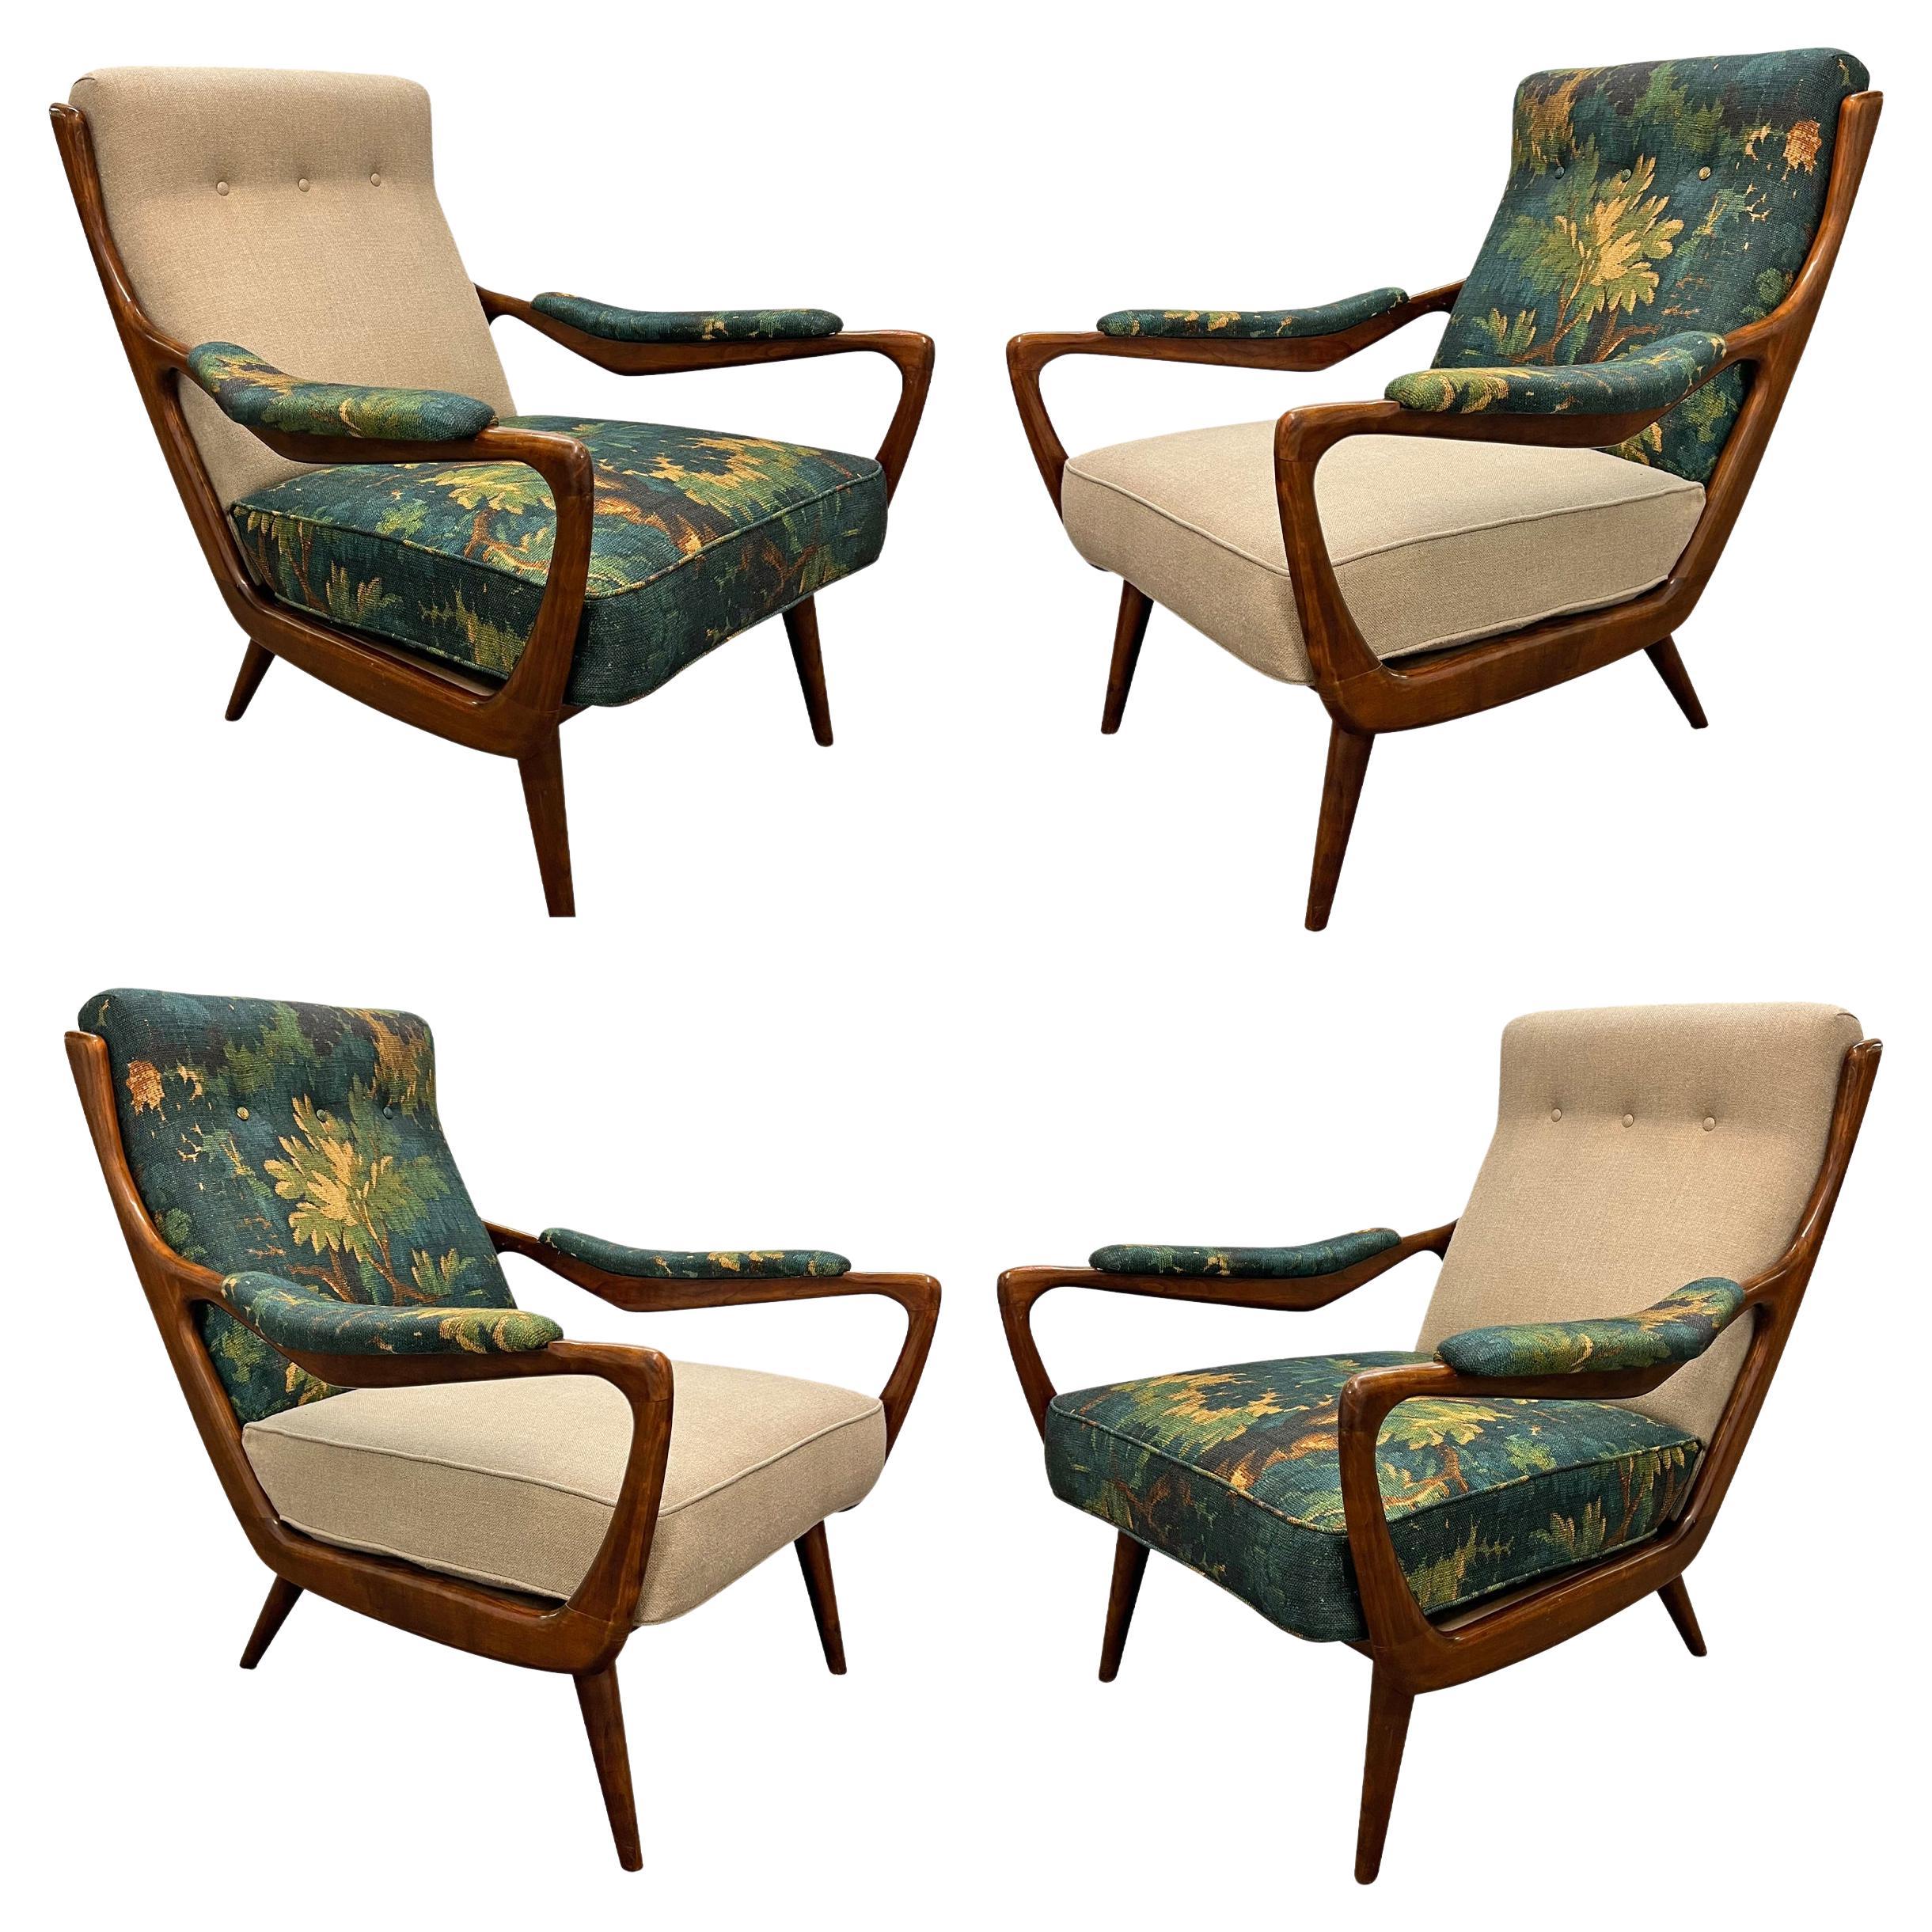 Ensemble de quatre chaises longues danoises modernes des années 1950